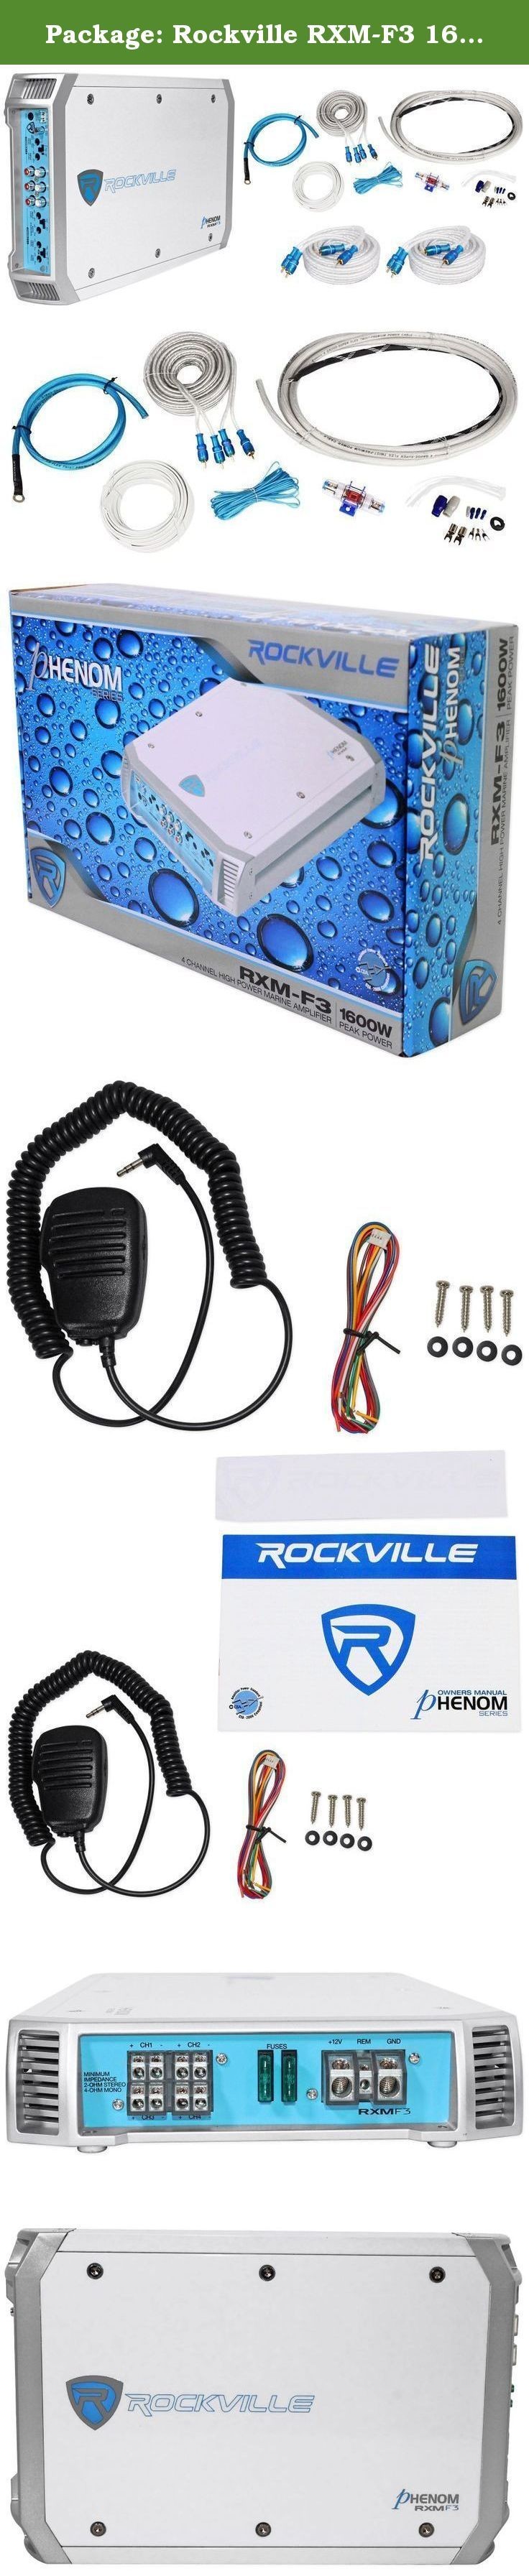 Package Rockville RXM F3 1600 Watt 4 Channel Marine Amplifier 4 AWG Gauge Waterproof Marine Boat Amplifier Wire Installation Kit 2 25 Foot Twisted